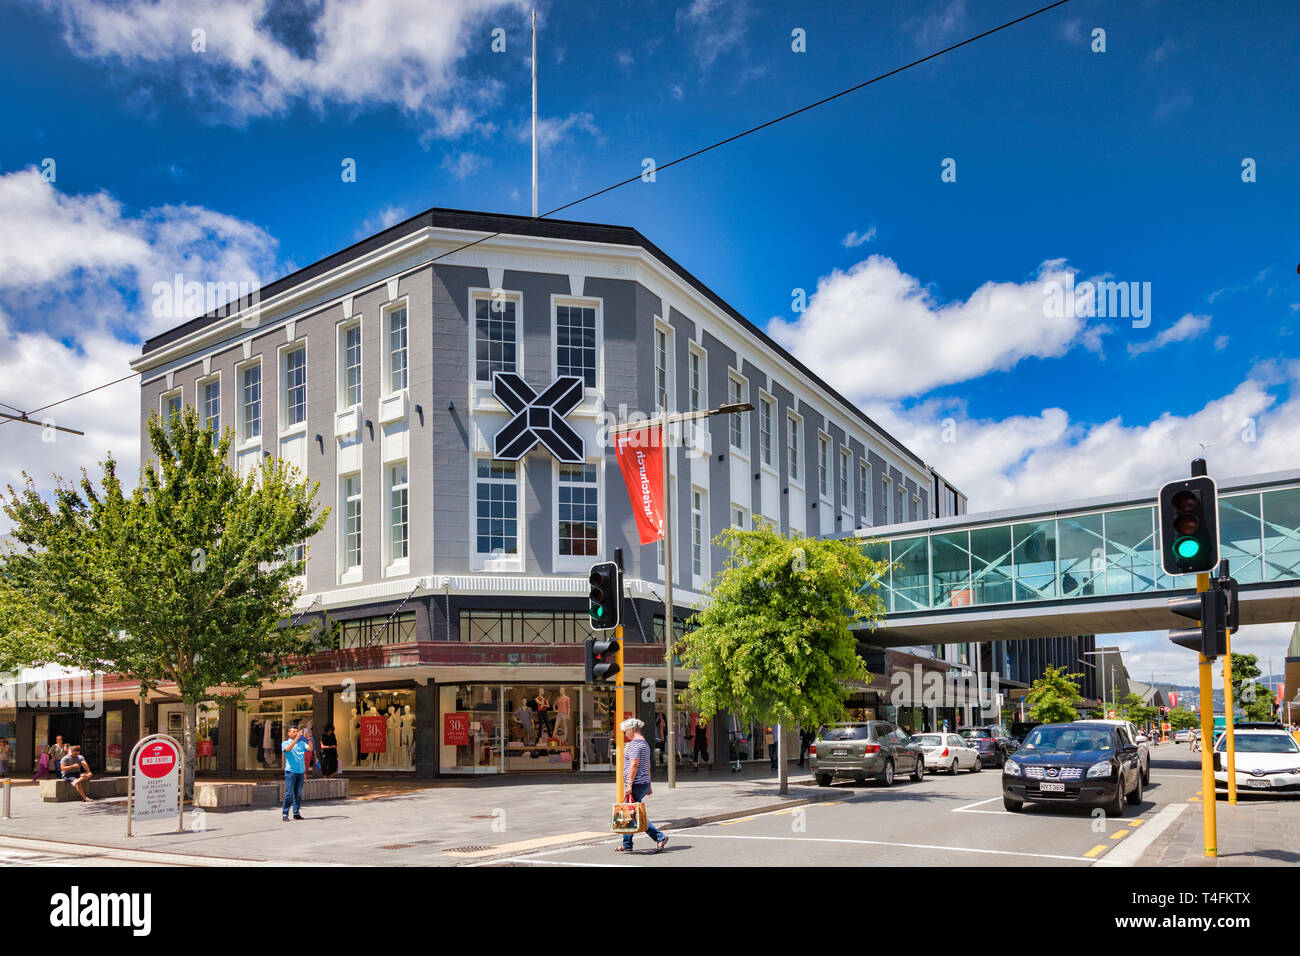 Vom 8. Januar 2019: Christchurch, Neuseeland - die Kreuzung, ein neues Einkaufszentrum gebaut zu ersetzen, was im Erdbeben von 2011 verloren war. Stockfoto